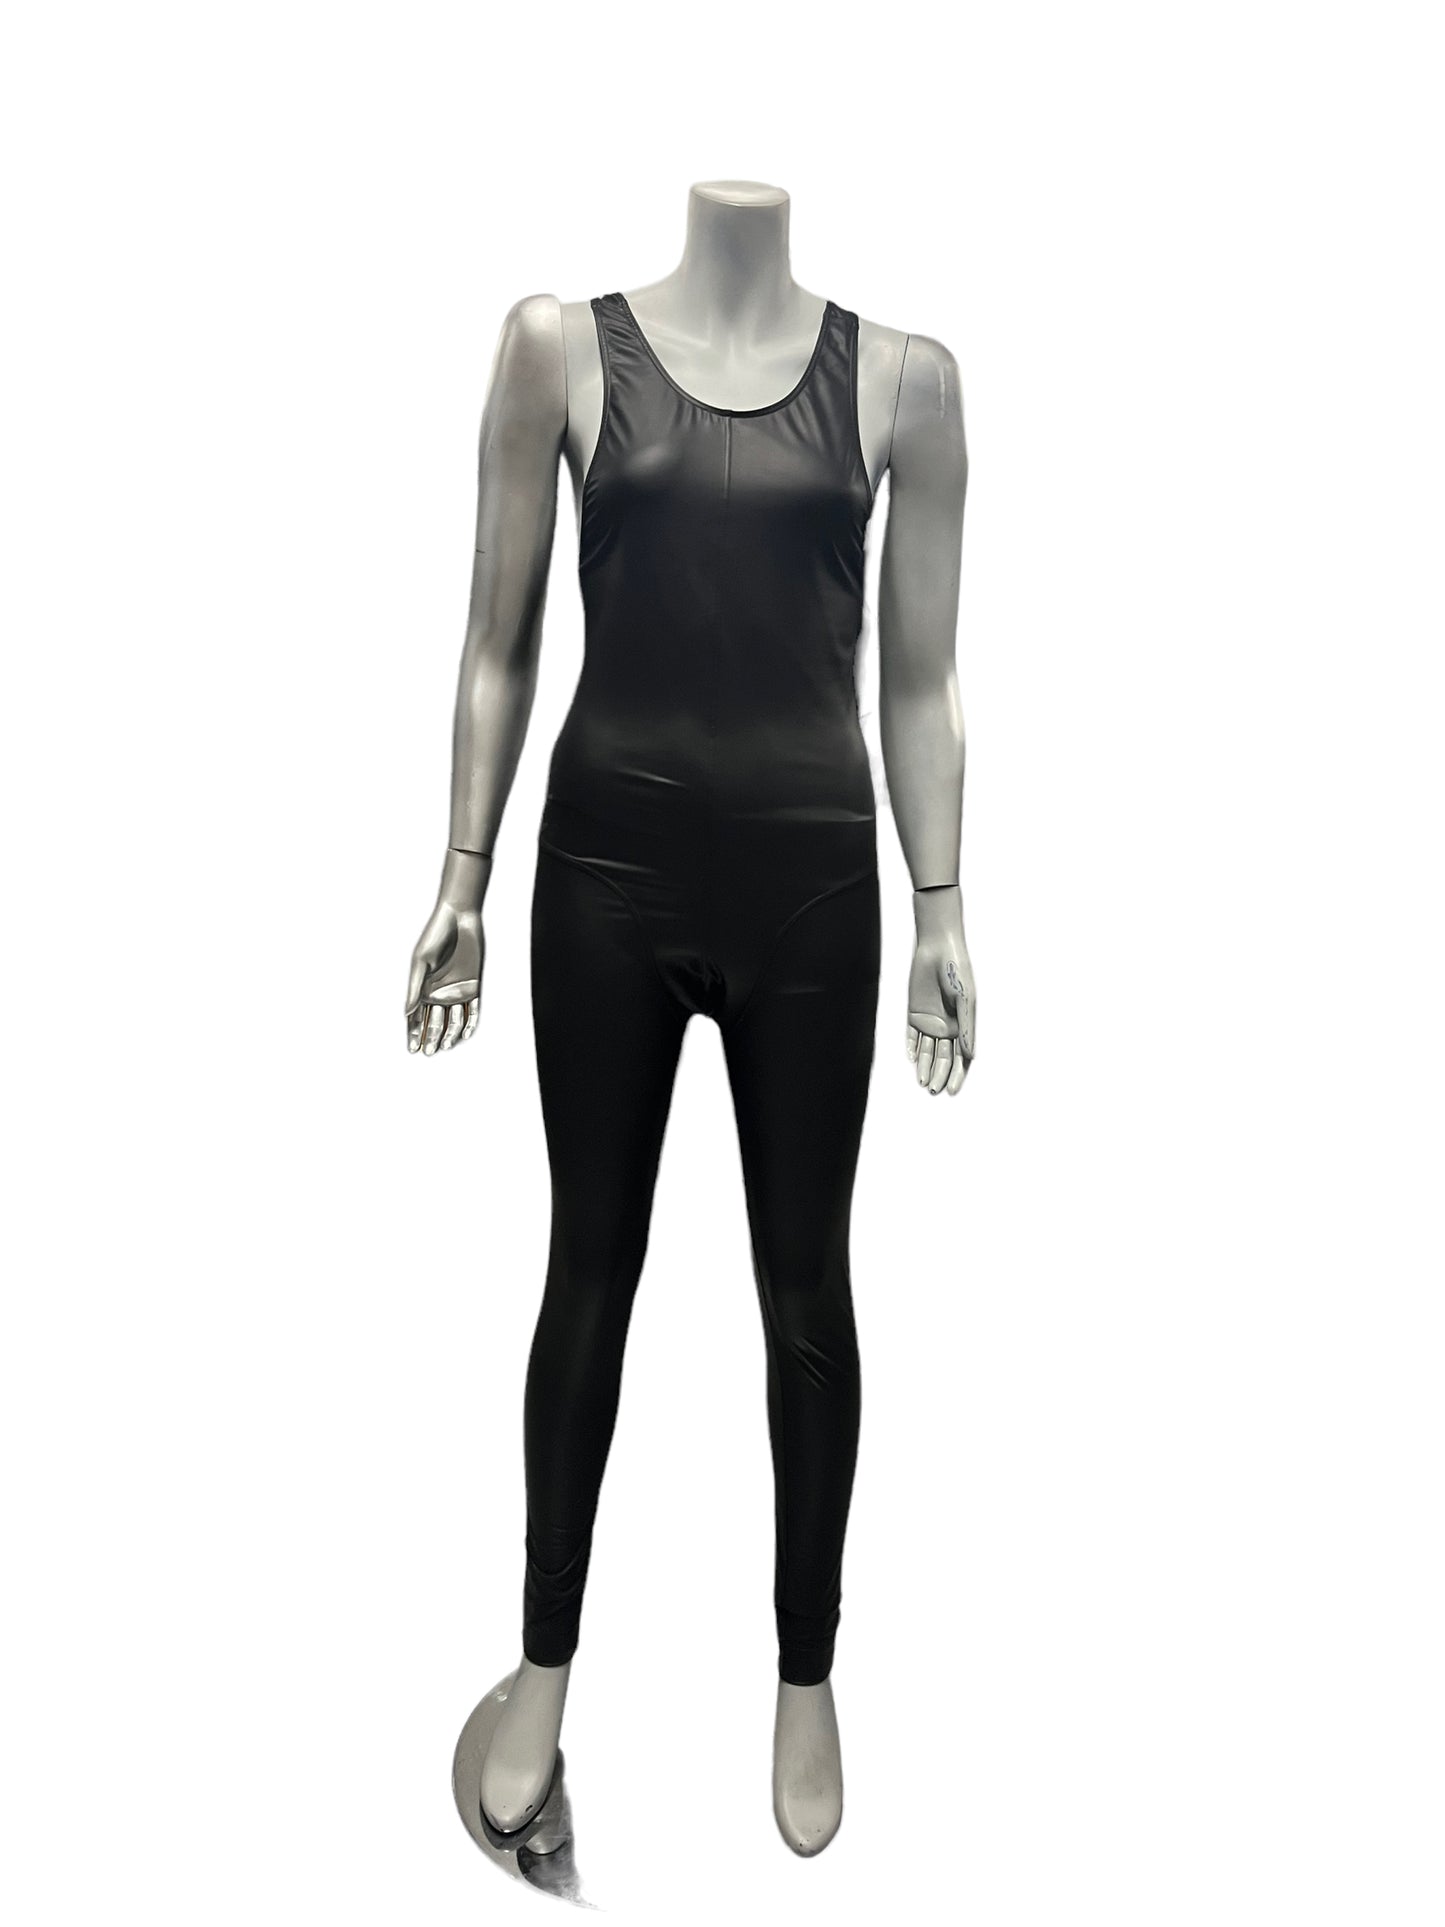 Manstore - LL32 - Black Athletic Suit - Wetlook